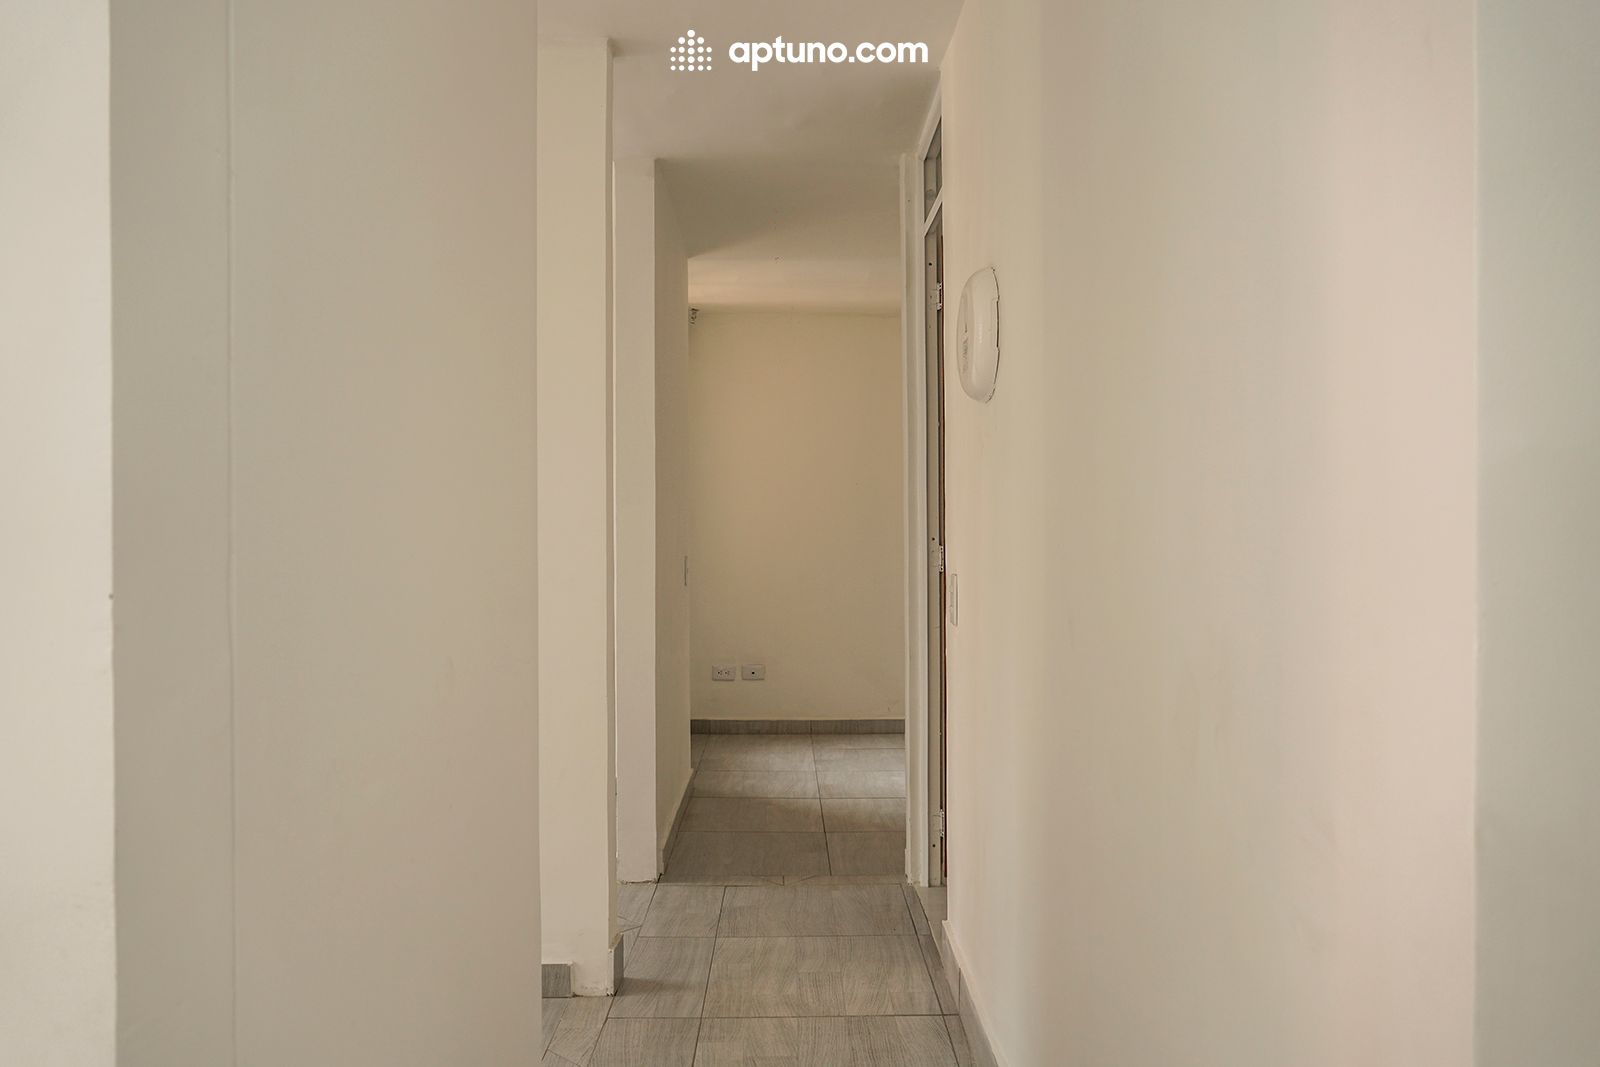 Apartamento en arriendo Guiparma 41 m² - $ 800.000,00